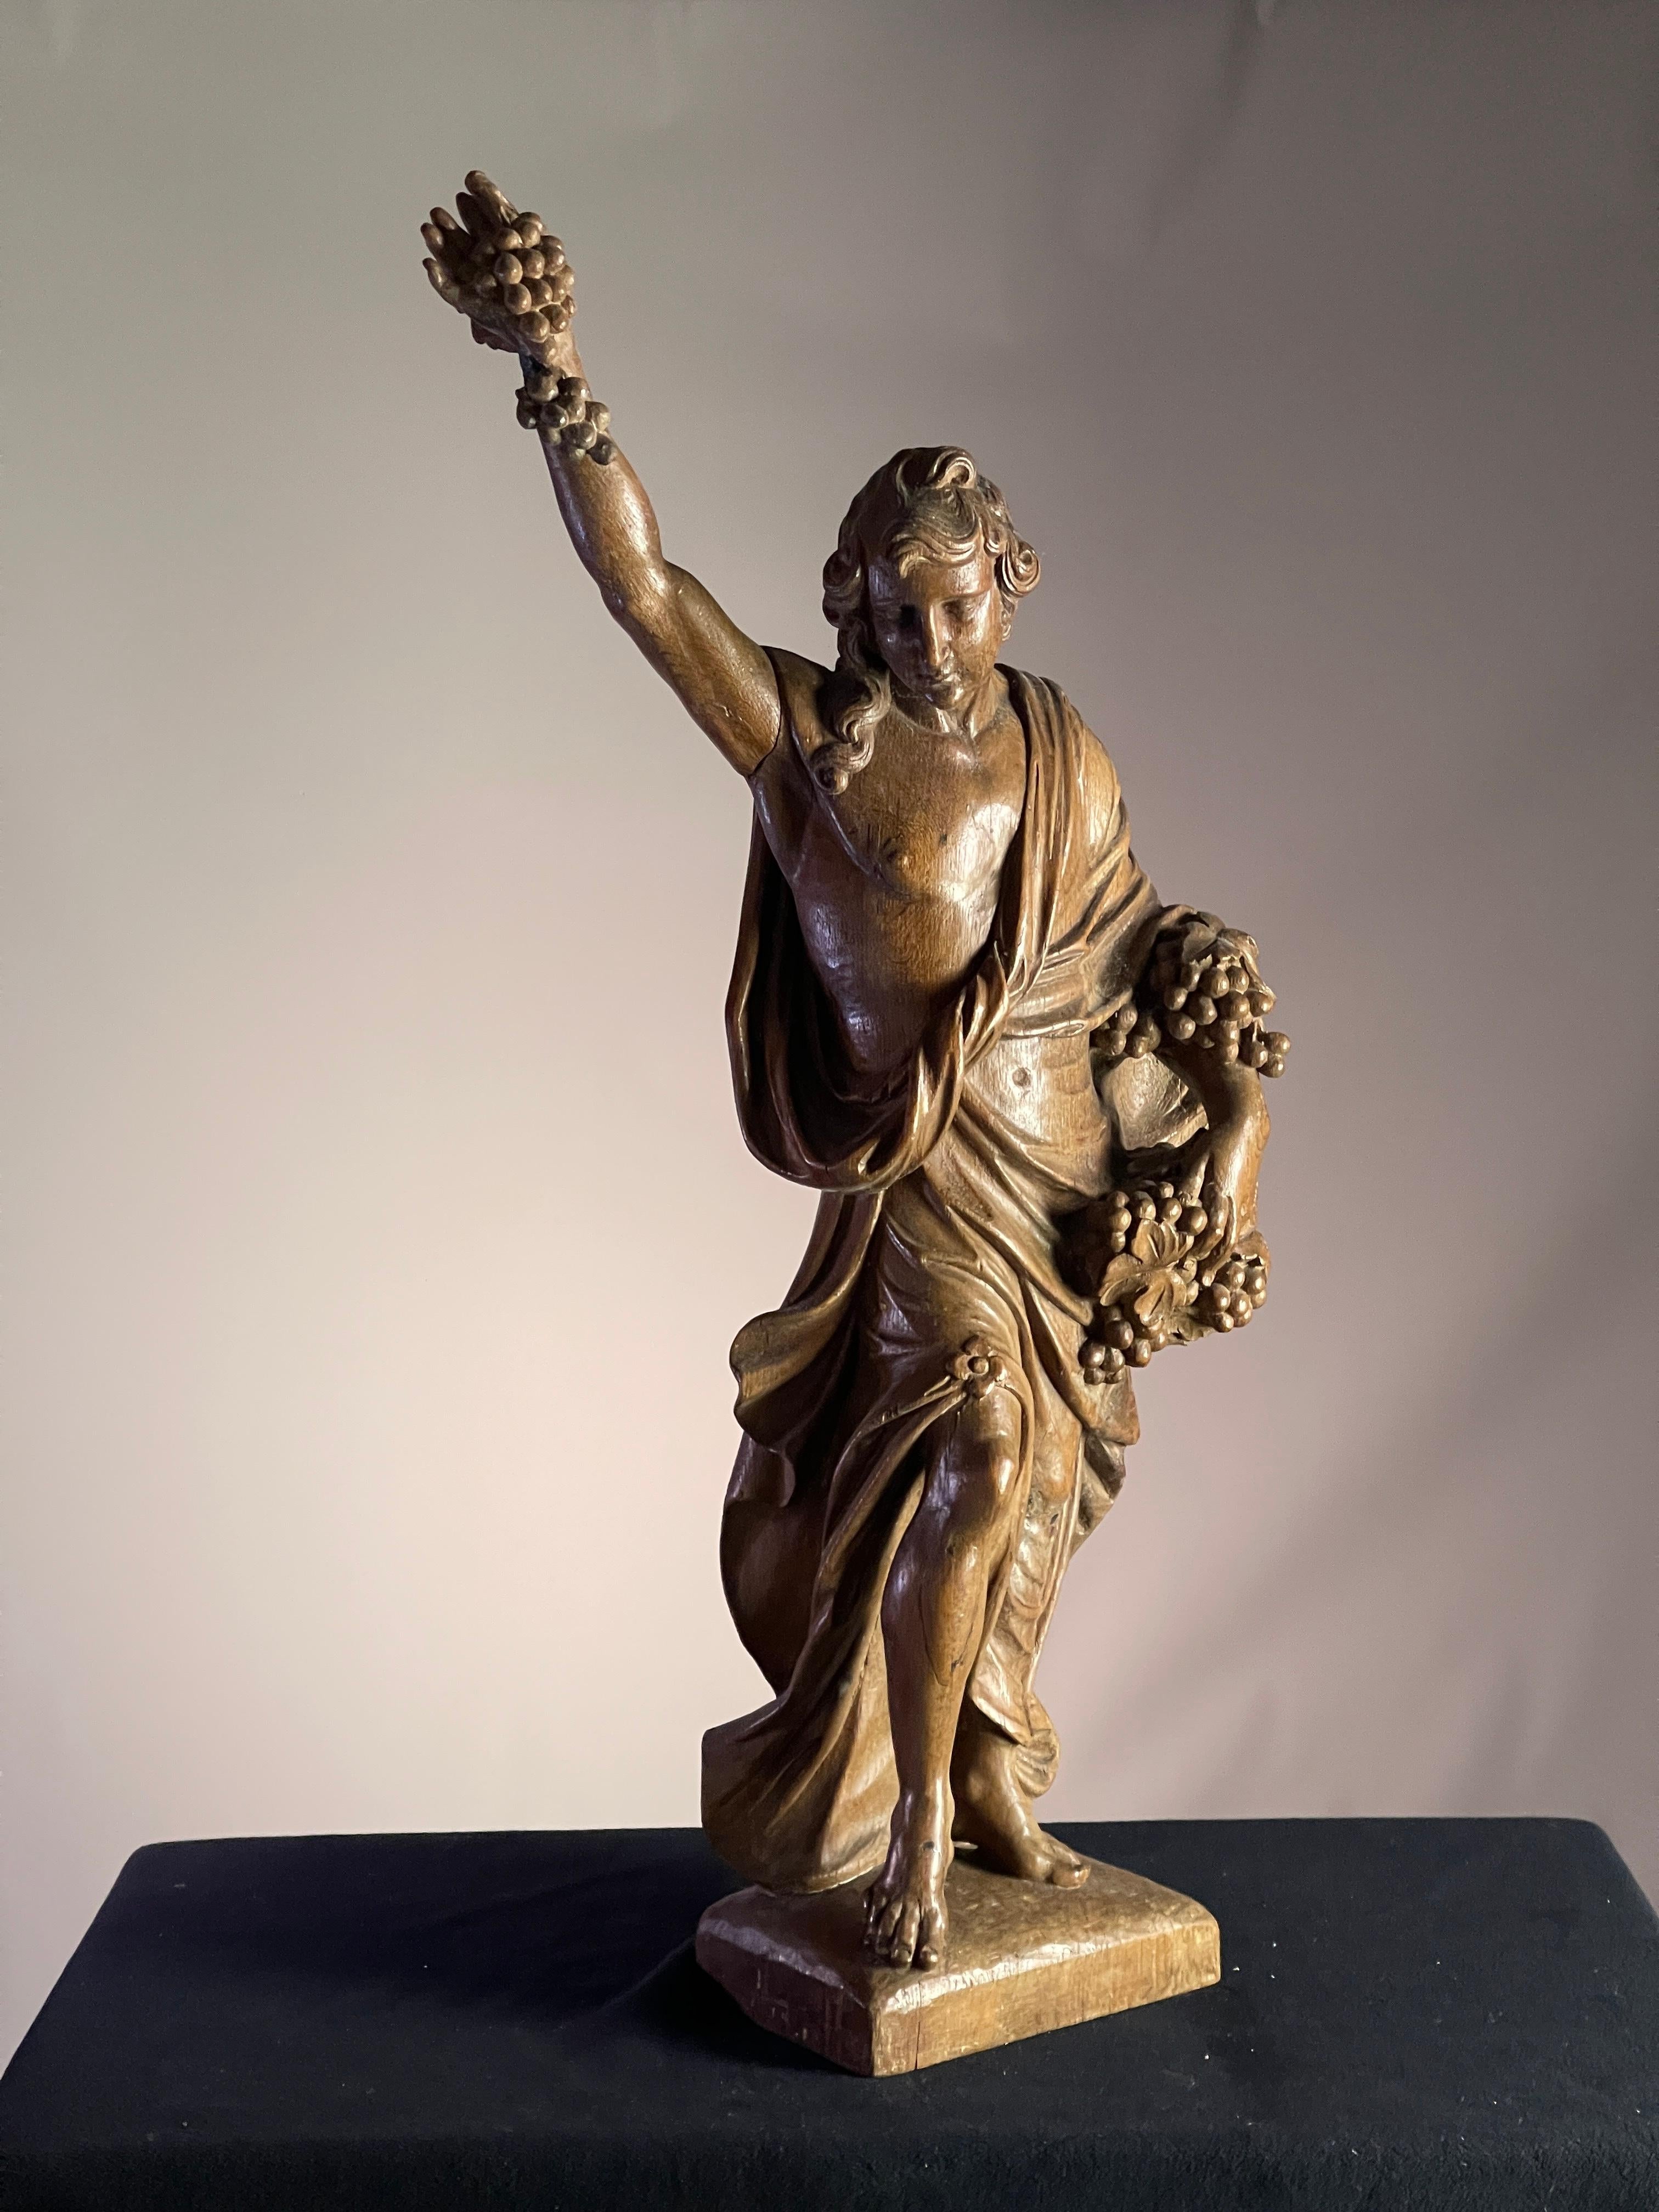 Eichenholzschnitzerei von Bacchus, Gott des Weines CIRCA 1700, ausgezeichneter Zustand Farbe und Patinierung

Größe 110 cm hoch 50 cm breit 22 cm tief